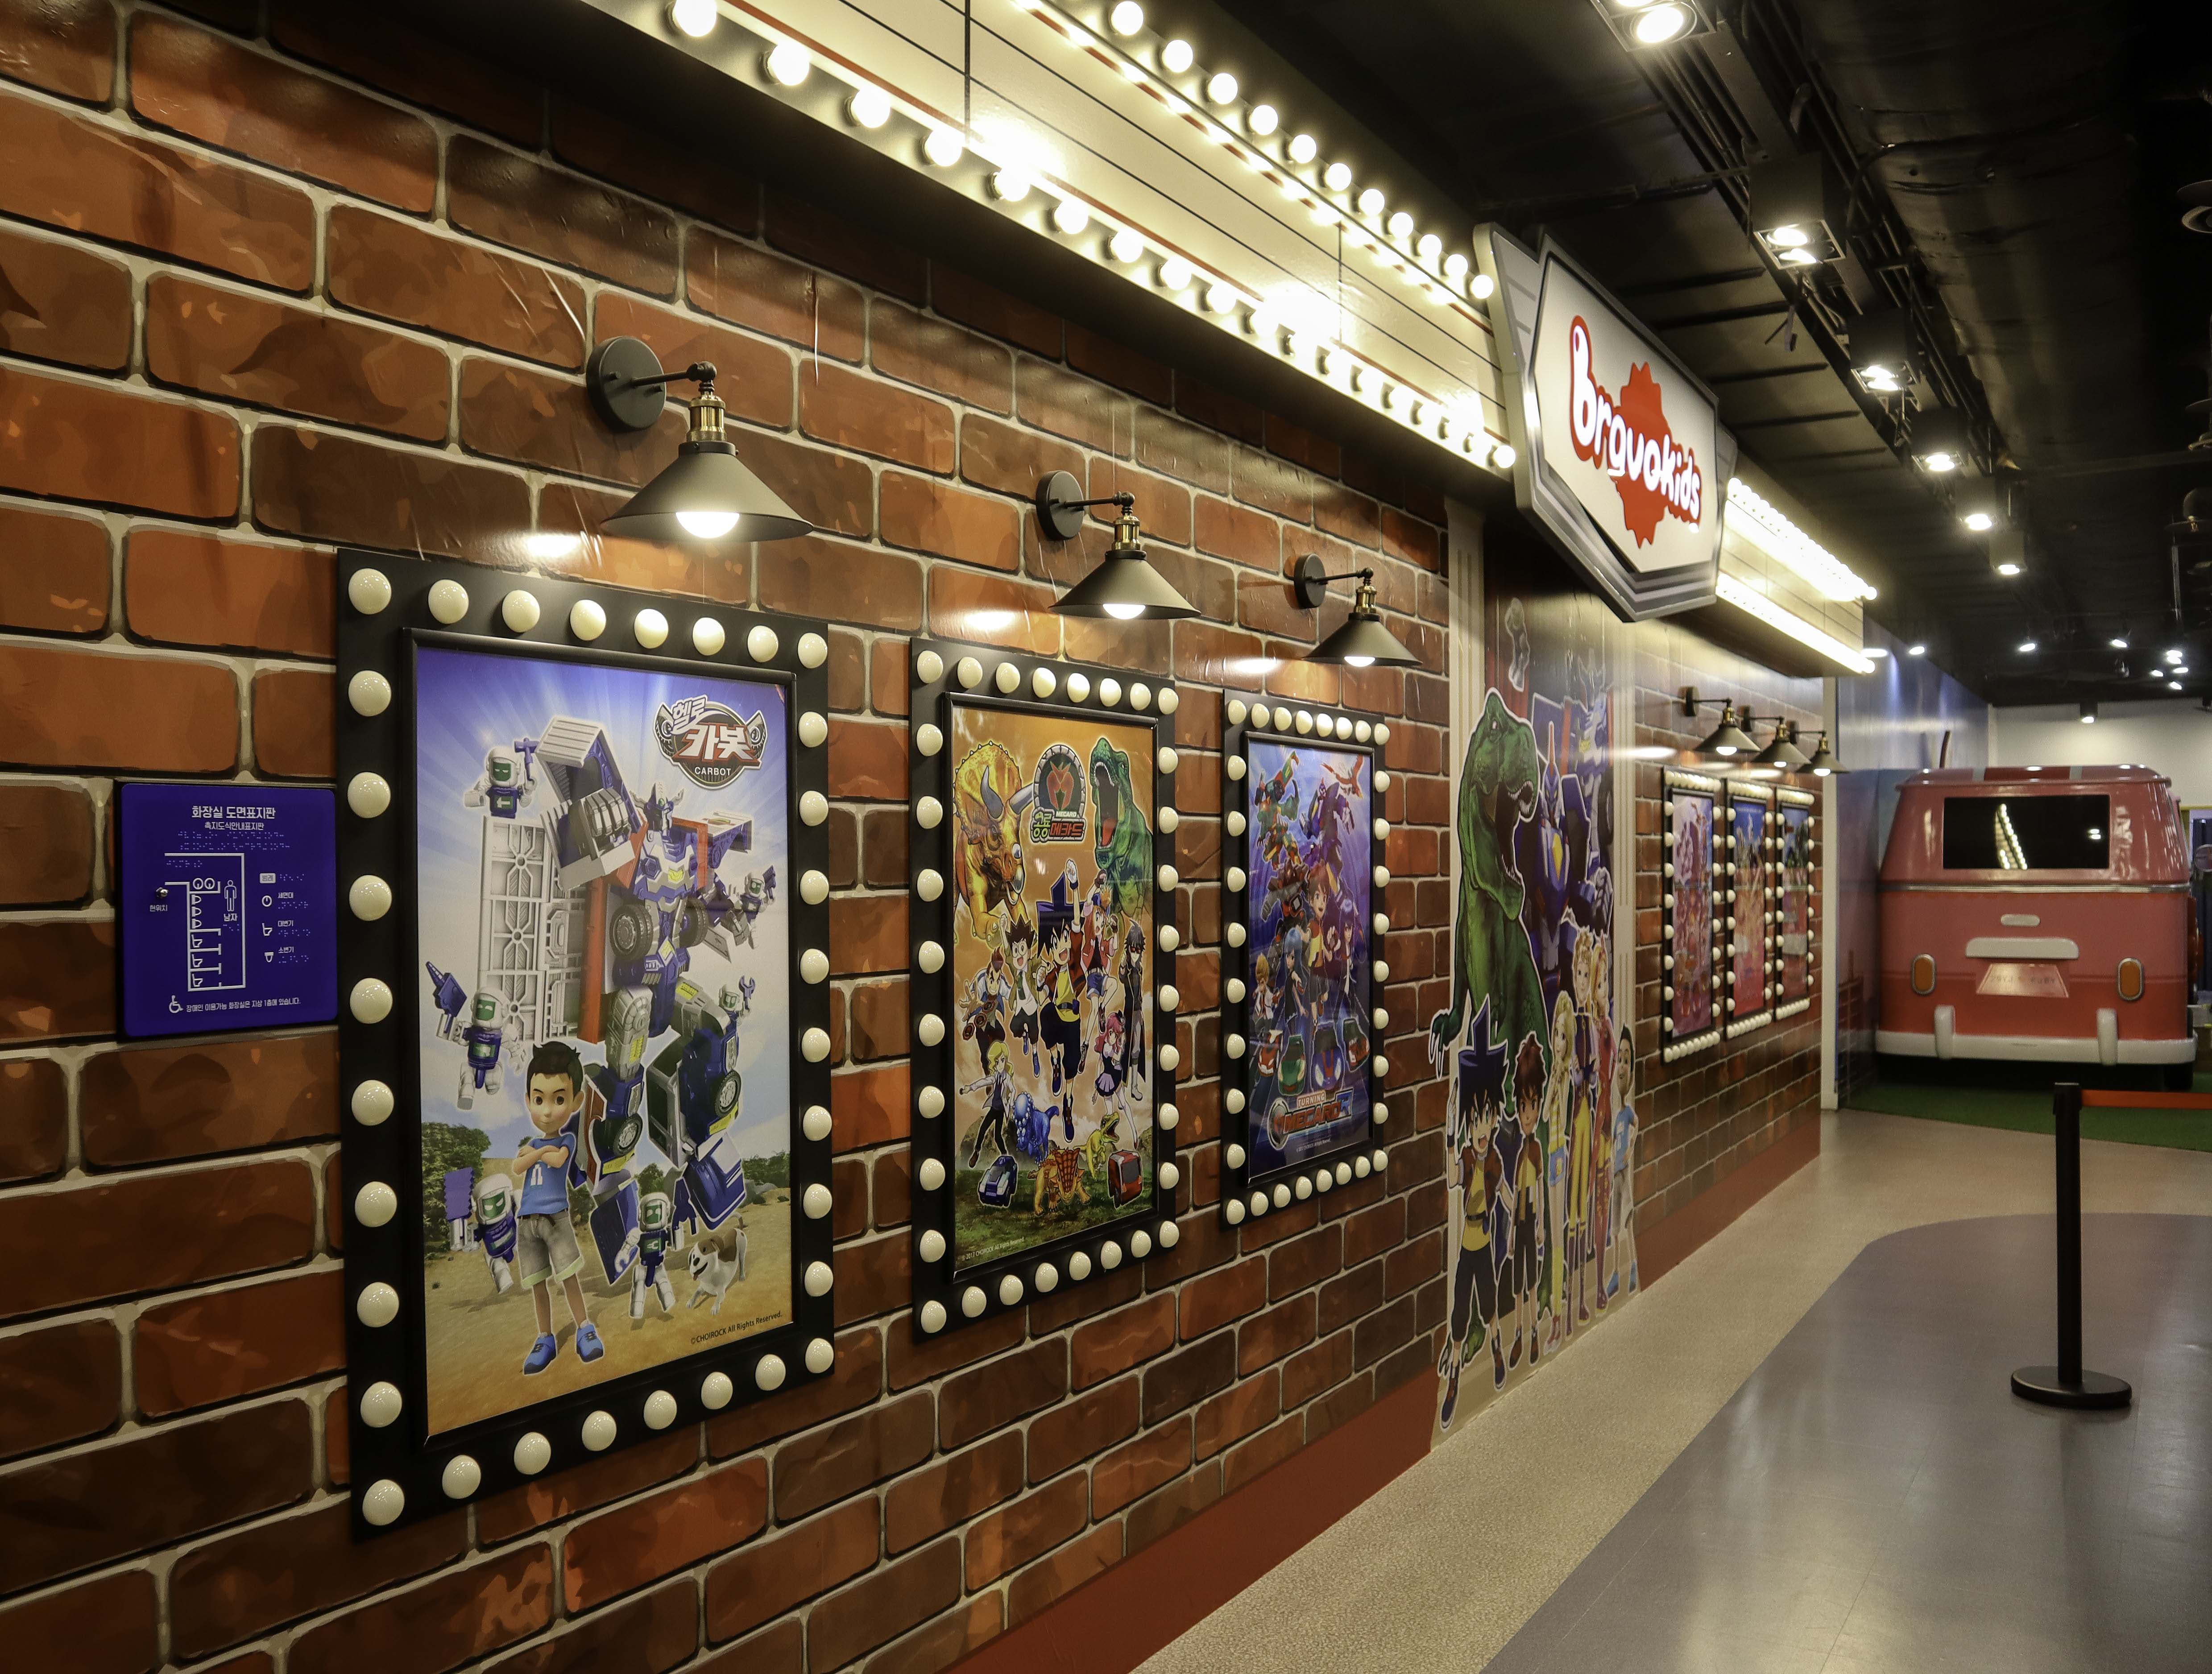 서울애니메이션센터2 : 애니메이션 포스터가 전시되어있는 서울애니메이션센터 내부 전경